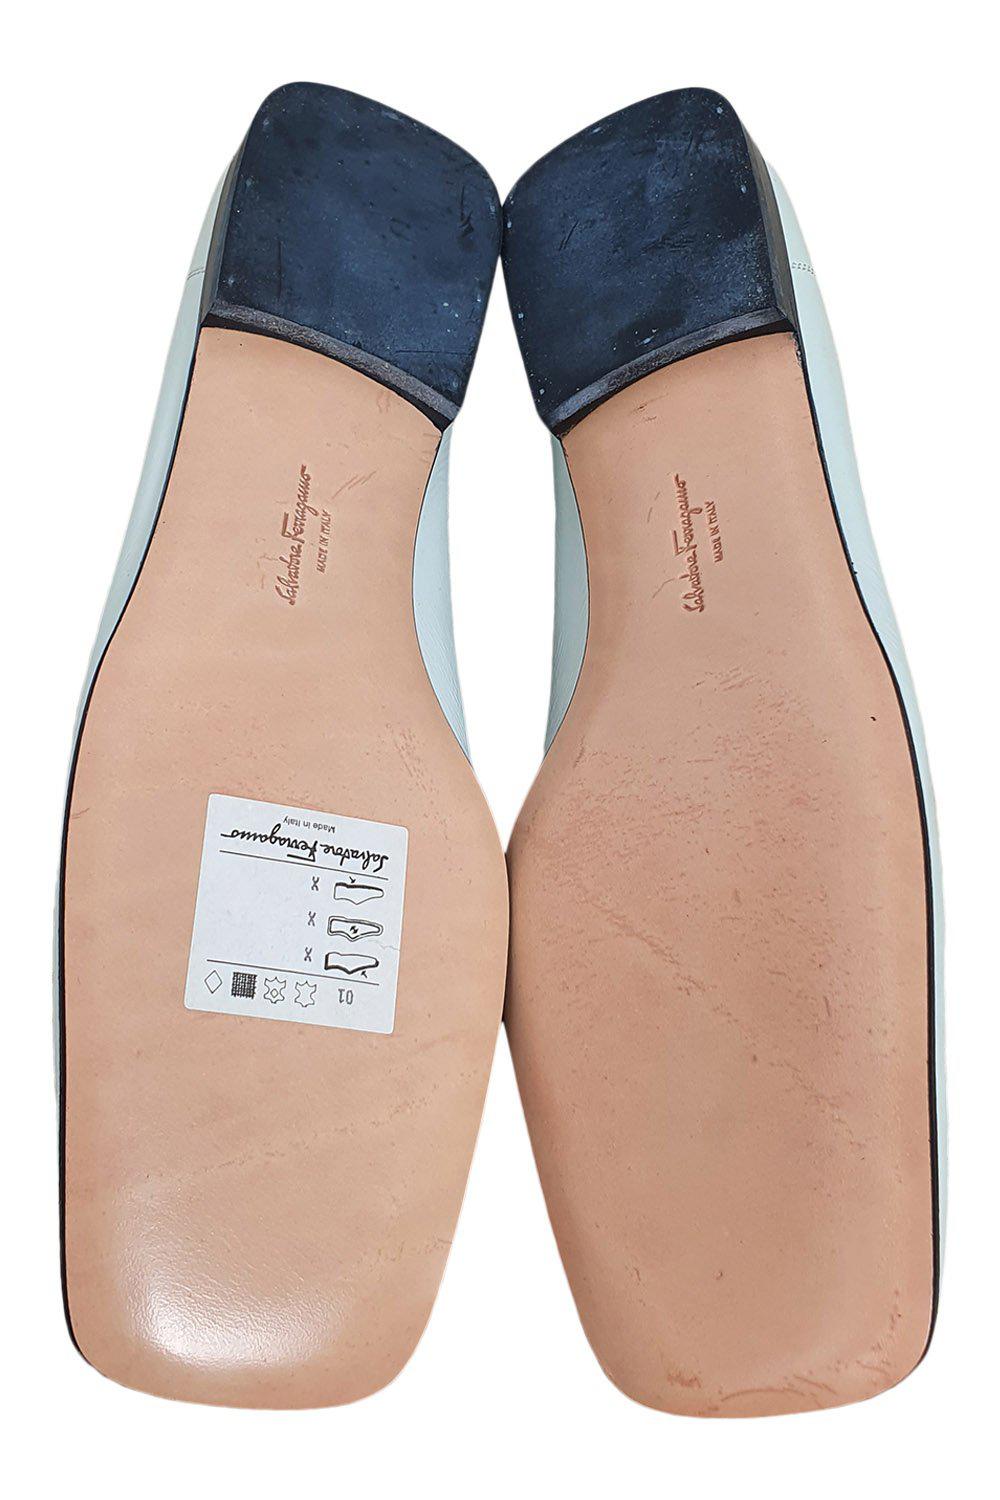 SALVATORE FERRAGAMO White Patent Leather Square Toe Court Shoes (9 B)-The Freperie